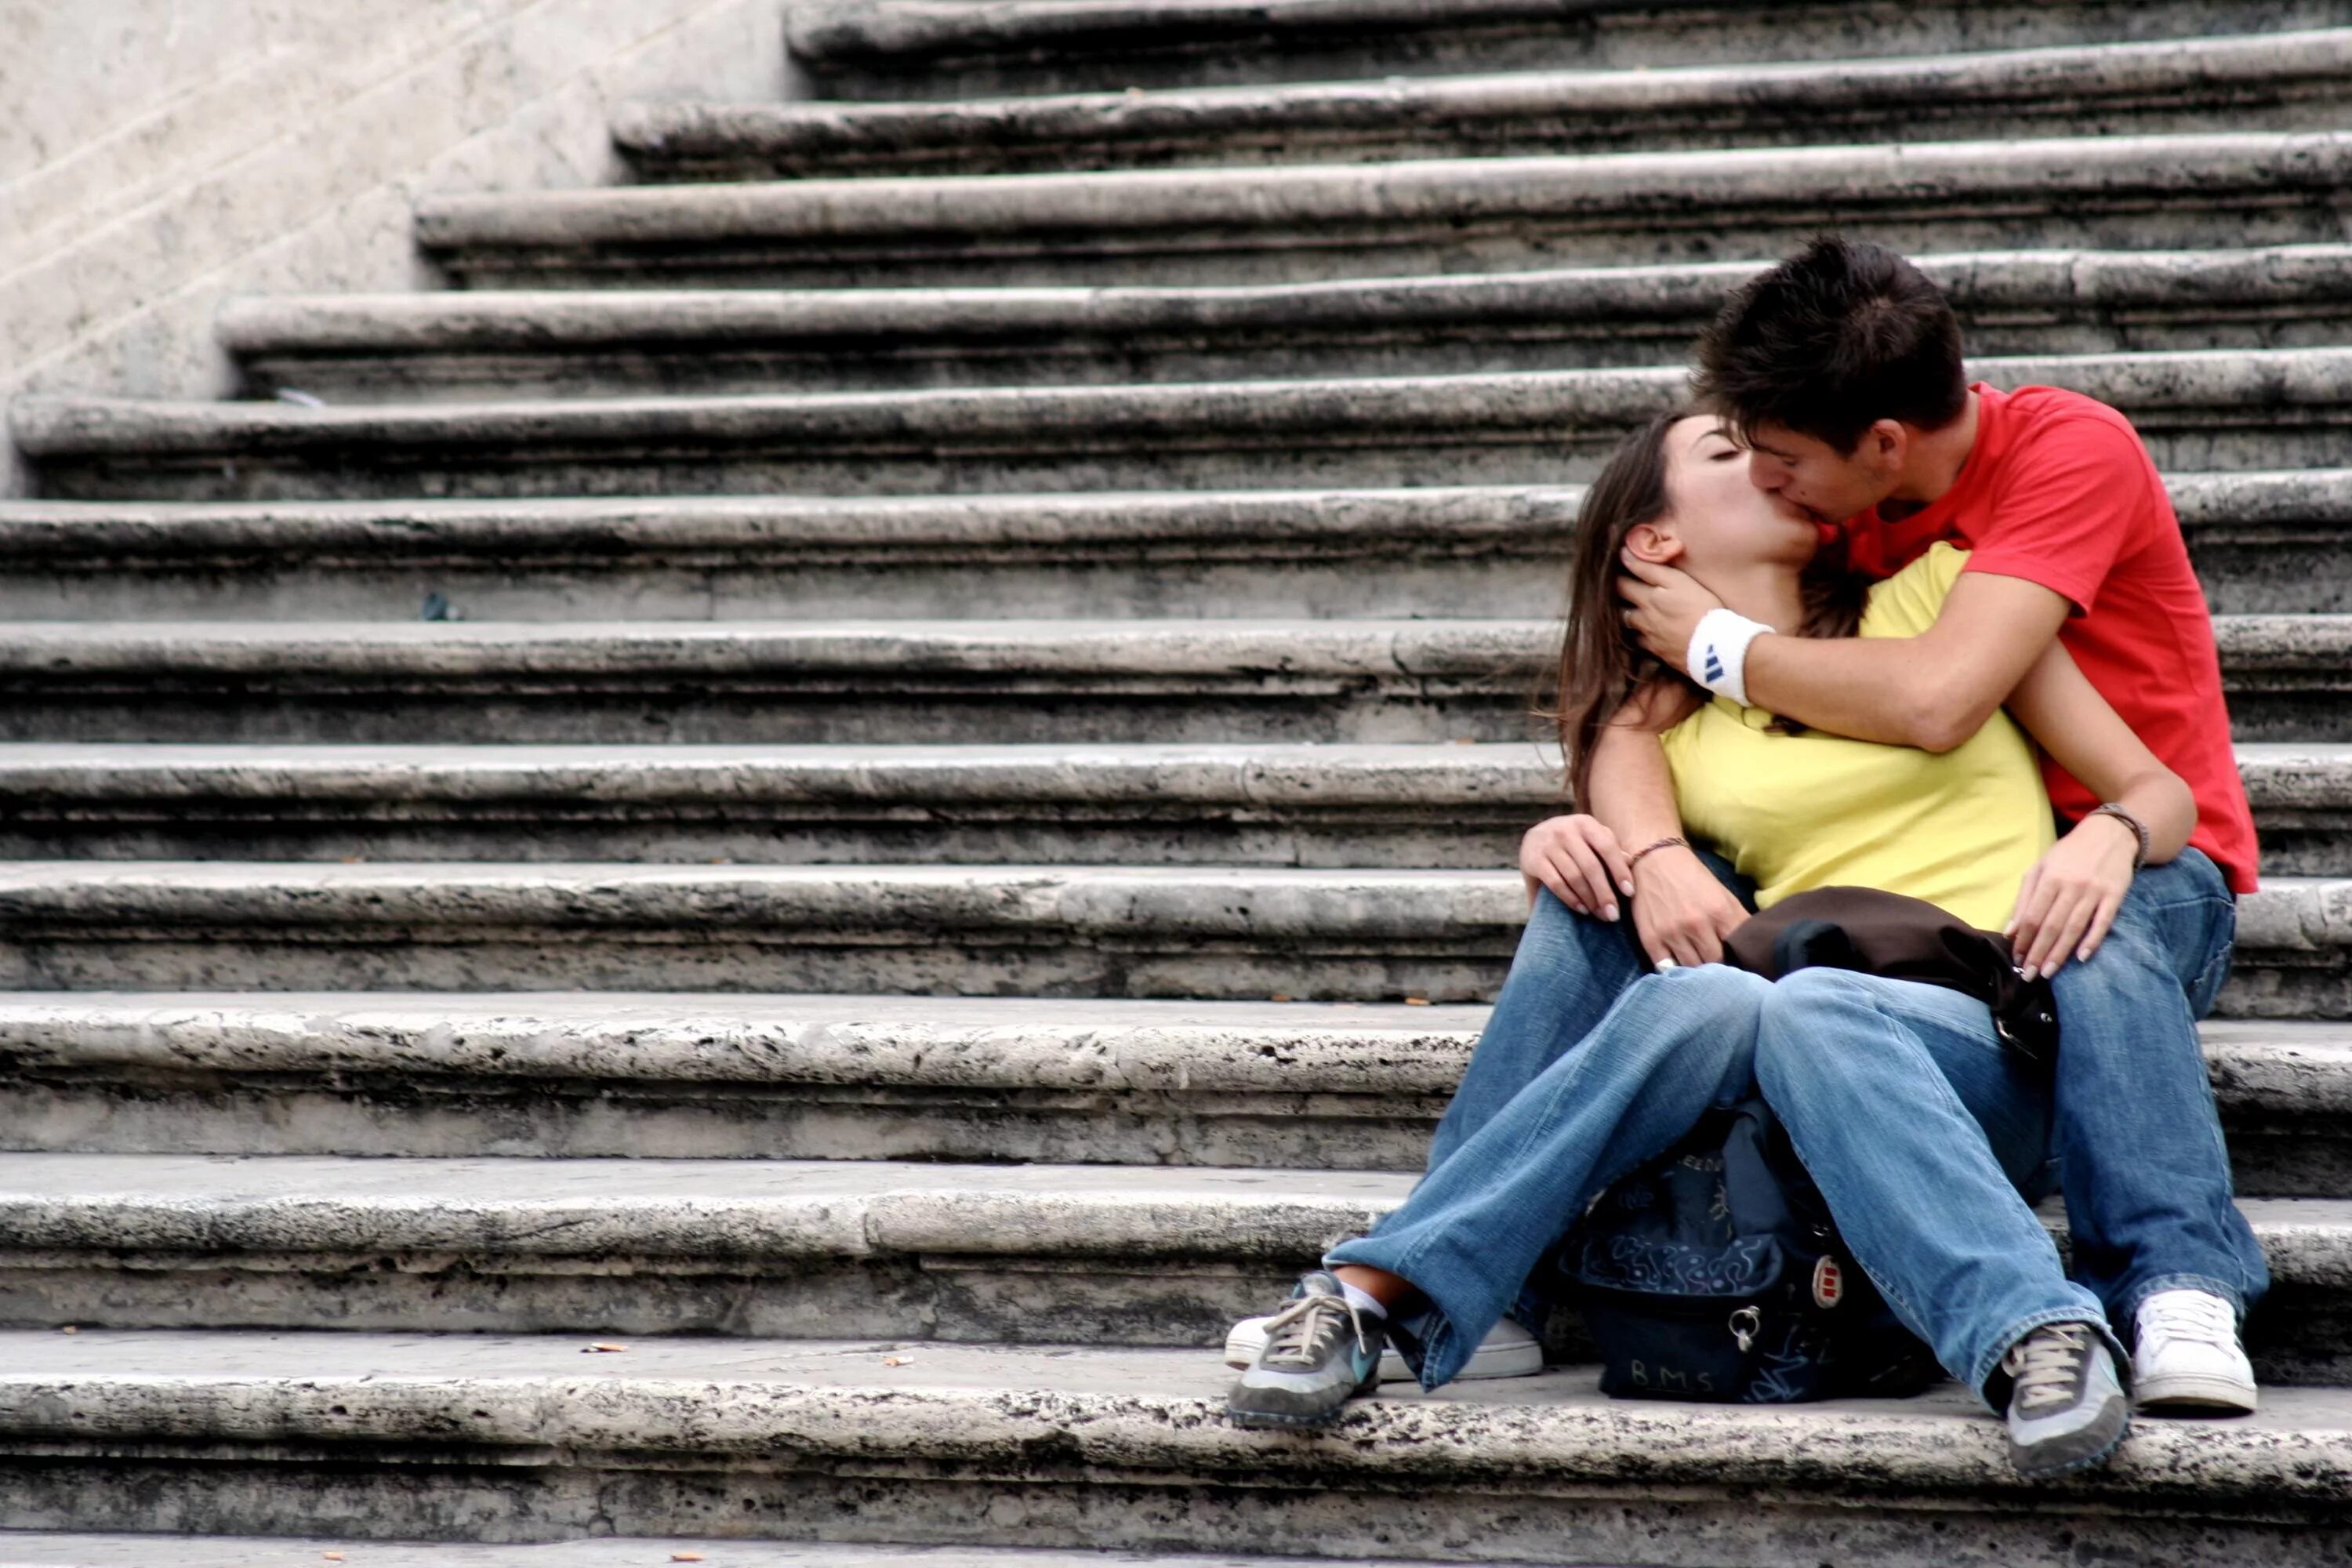 Поцелуи на обои. Влюбленные. Поцелуй на лестнице. Картинки про любовь. Поцелуй на ступеньках.